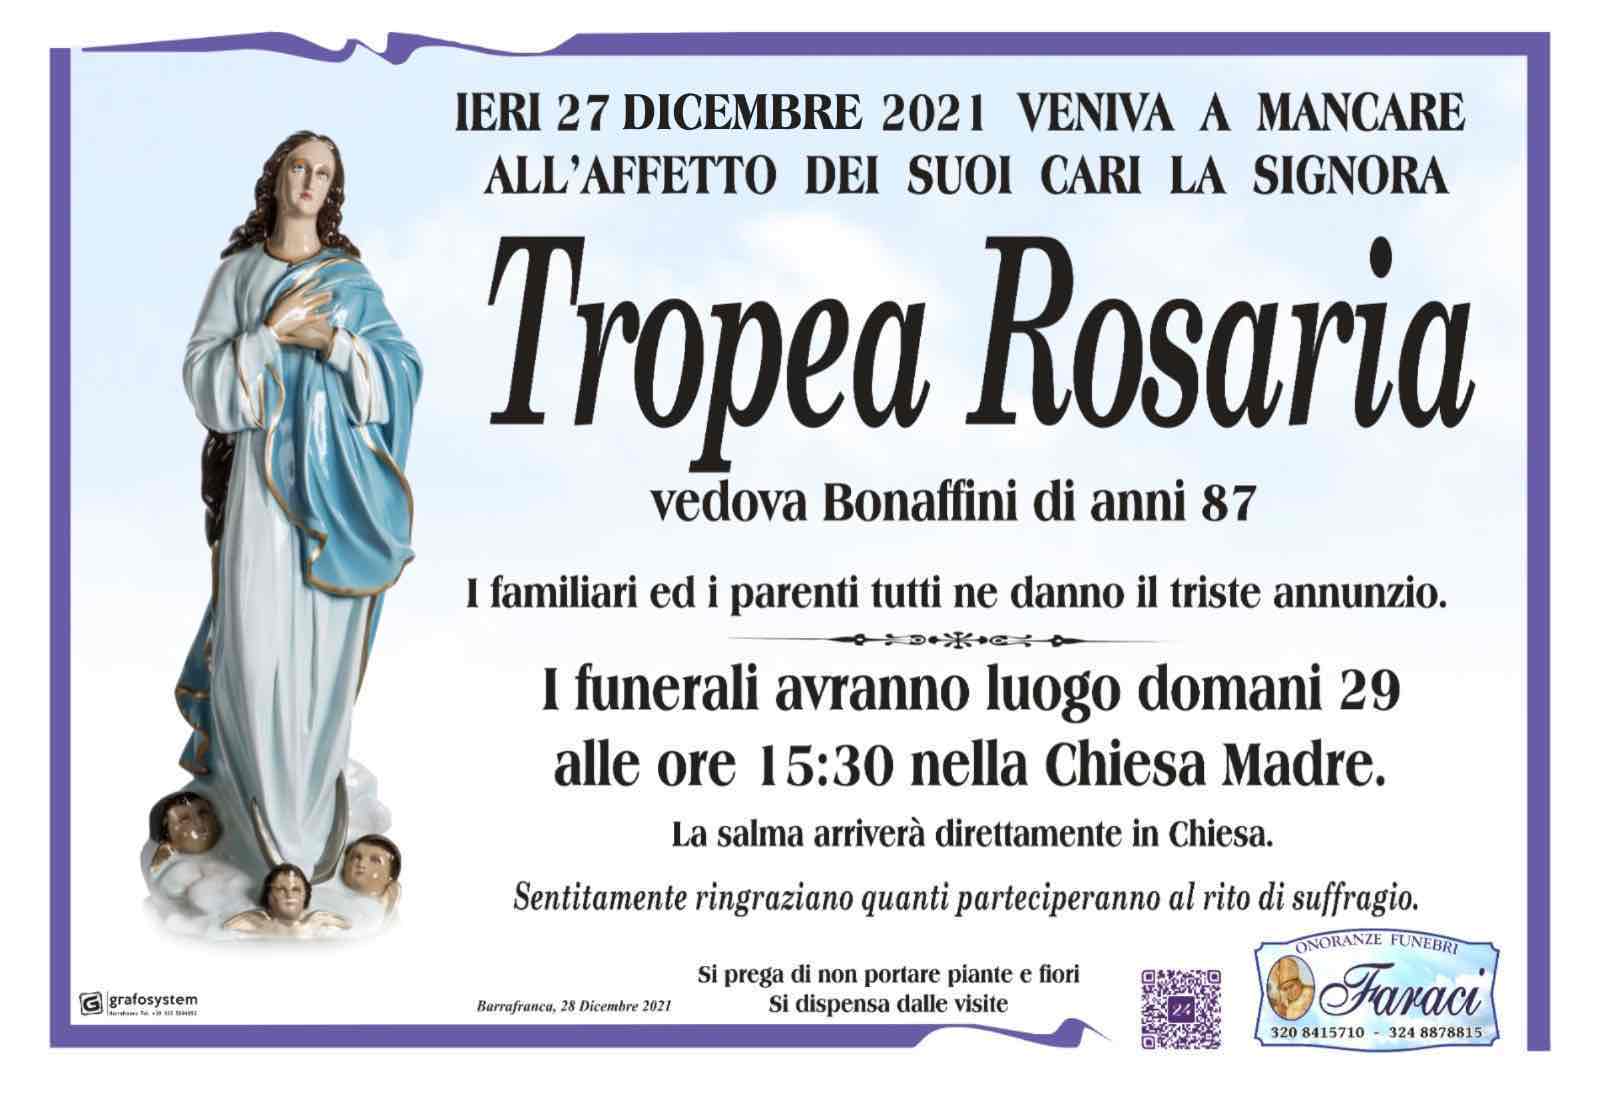 Rosaria Tropea